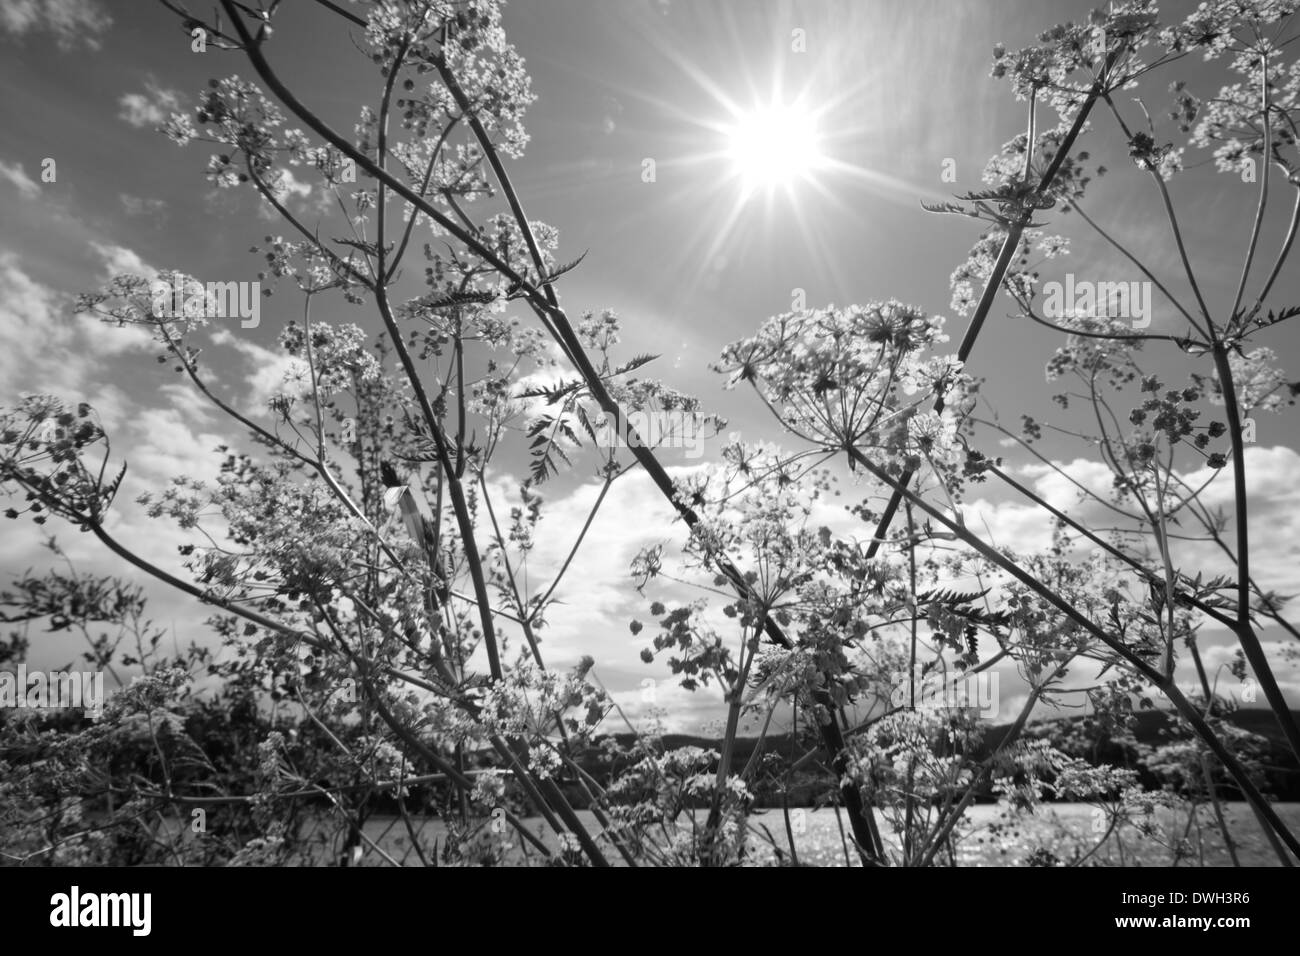 Weiße Blumen auf einer Wiese im Frühjahr blühen. Schwarz / weiß Fotografie. Stockfoto